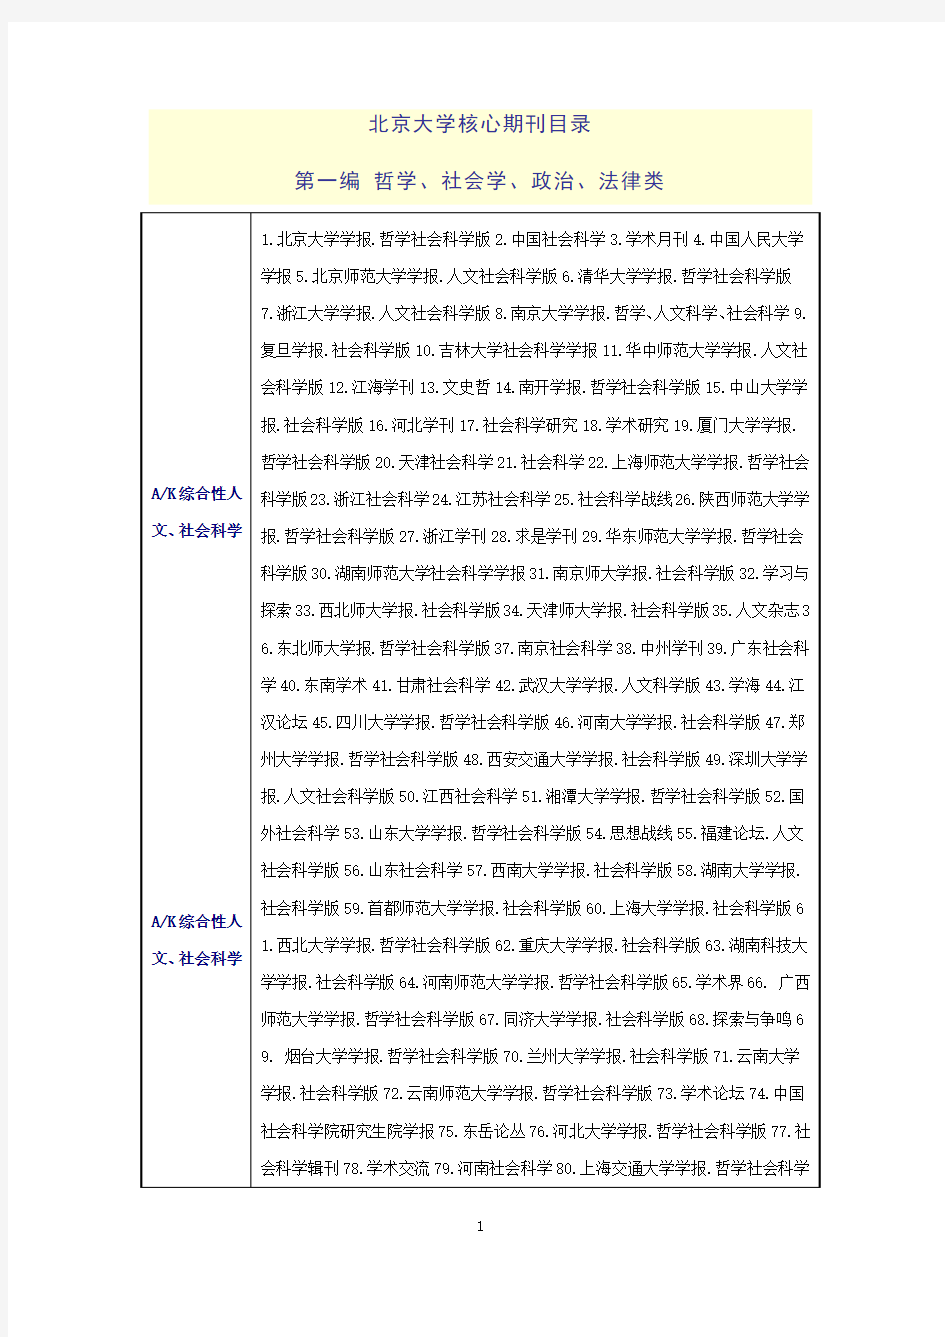 2016北大版《中文核心期刊要目总览》(核心类)